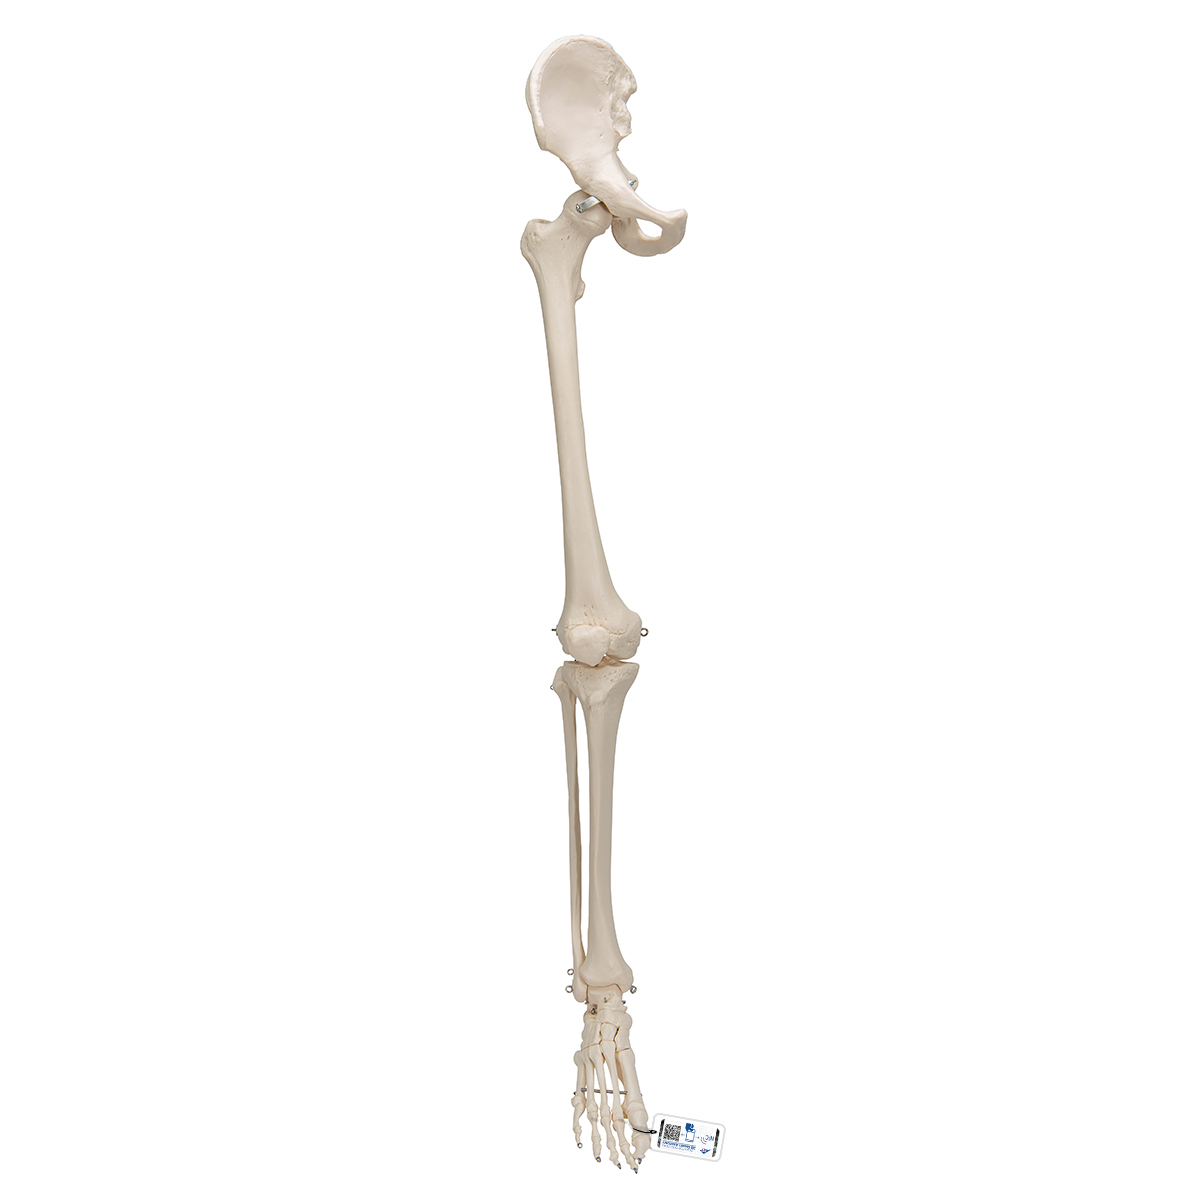 Beinskelett Modell mit Hüftknochen - 3B Smart Anatomy, Bestellnummer 1019366, A36, 3B Scientific